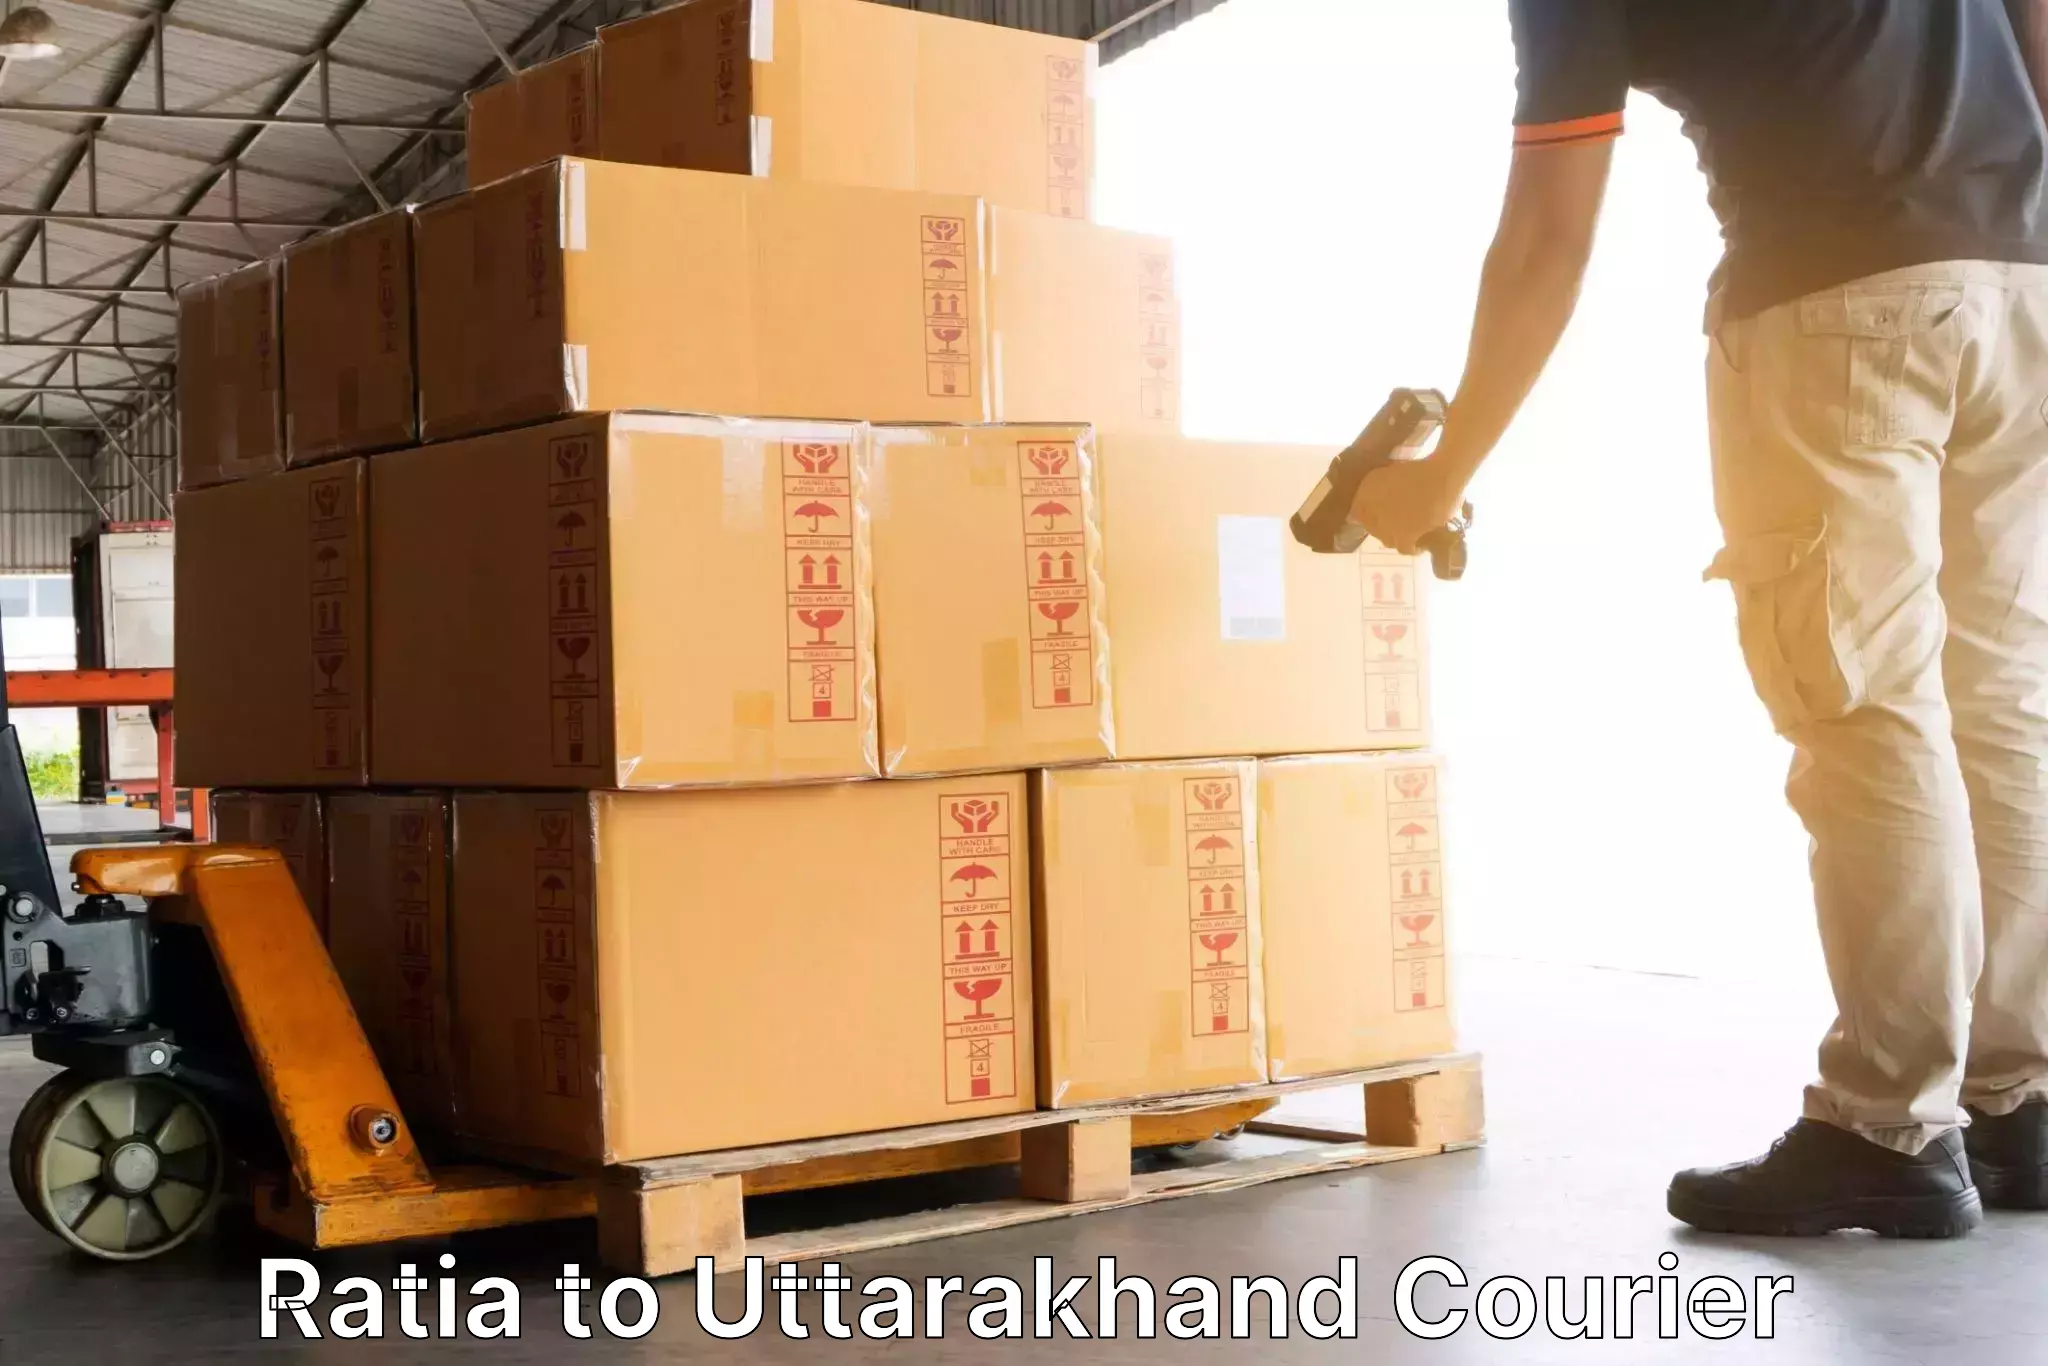 Express delivery solutions Ratia to Dehradun